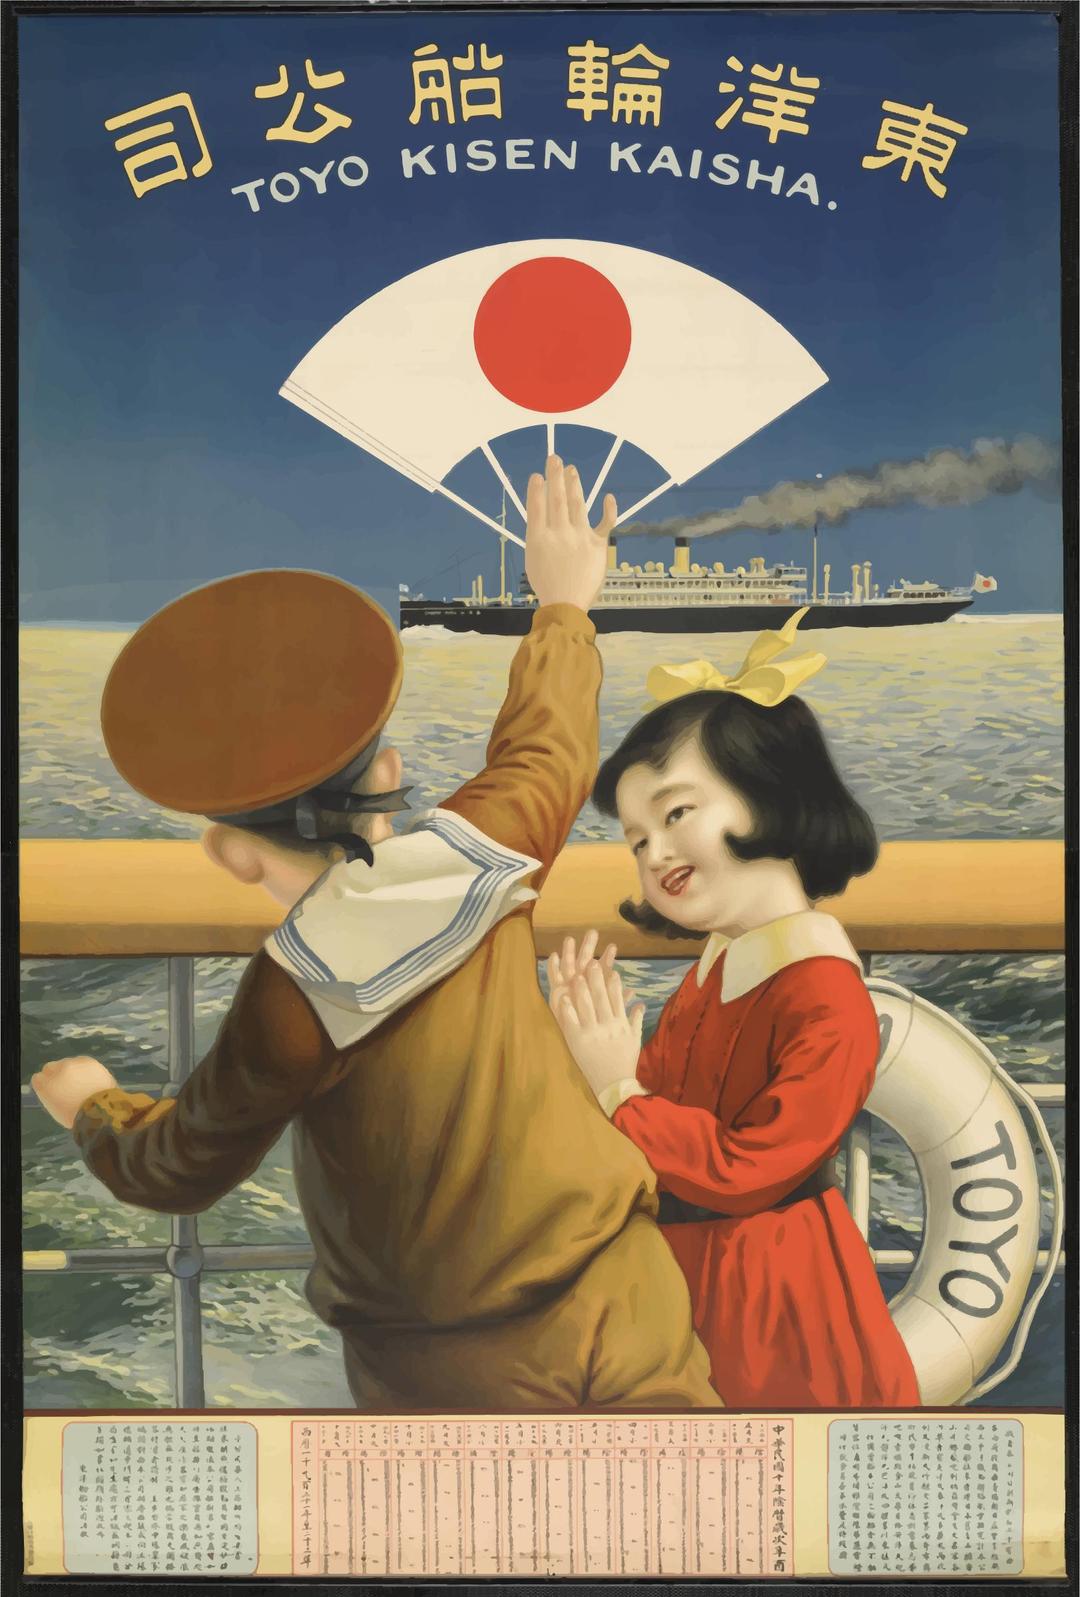 Vintage Travel Poster Japan 2 png transparent